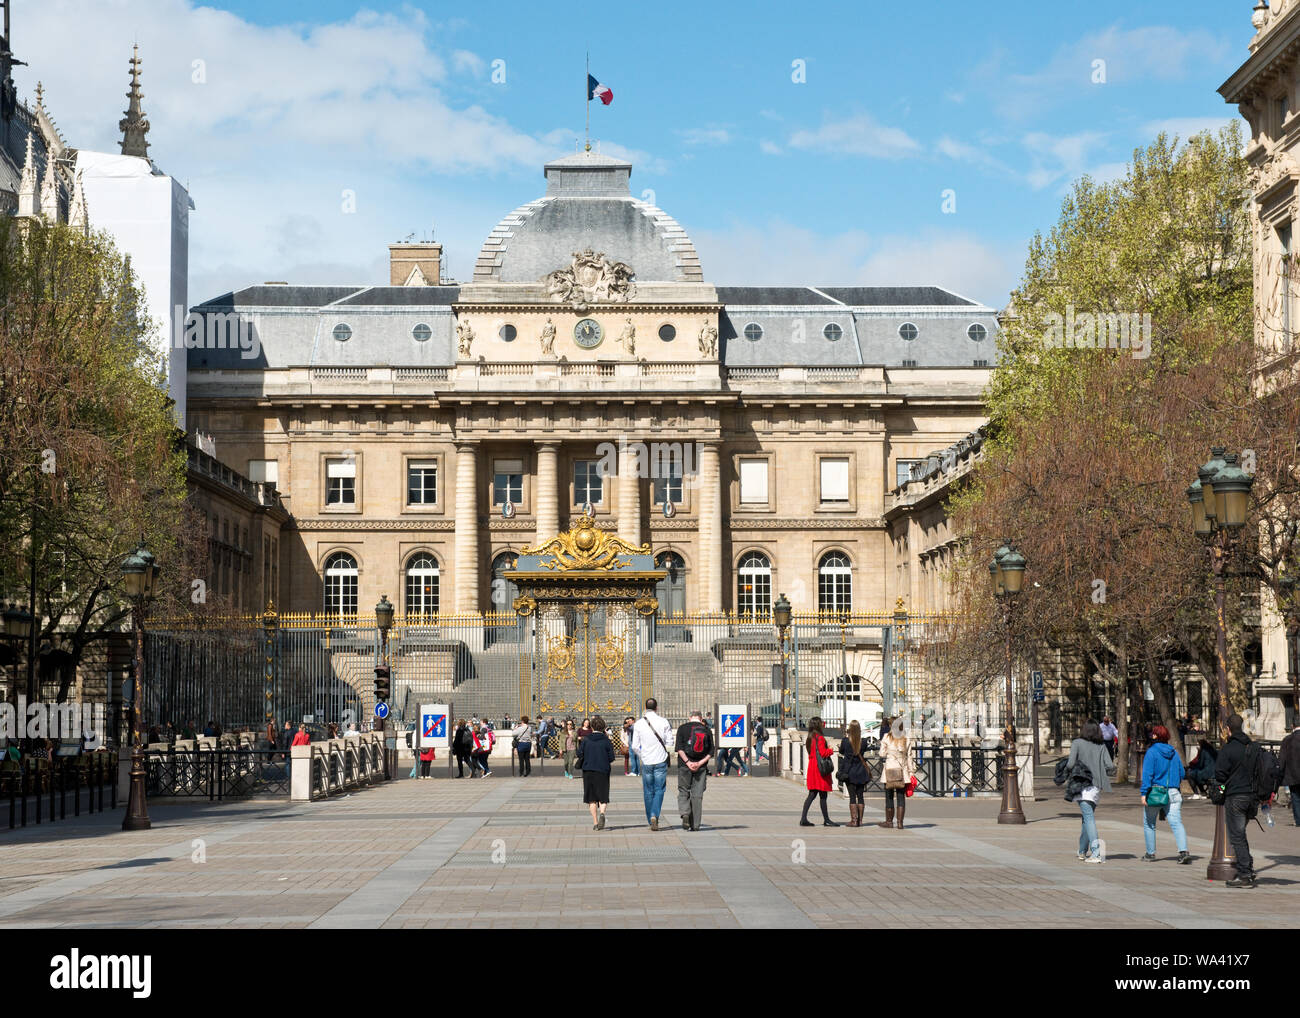 Palais de Justice (Palace of Justice) building. Paris, France. Stock Photo